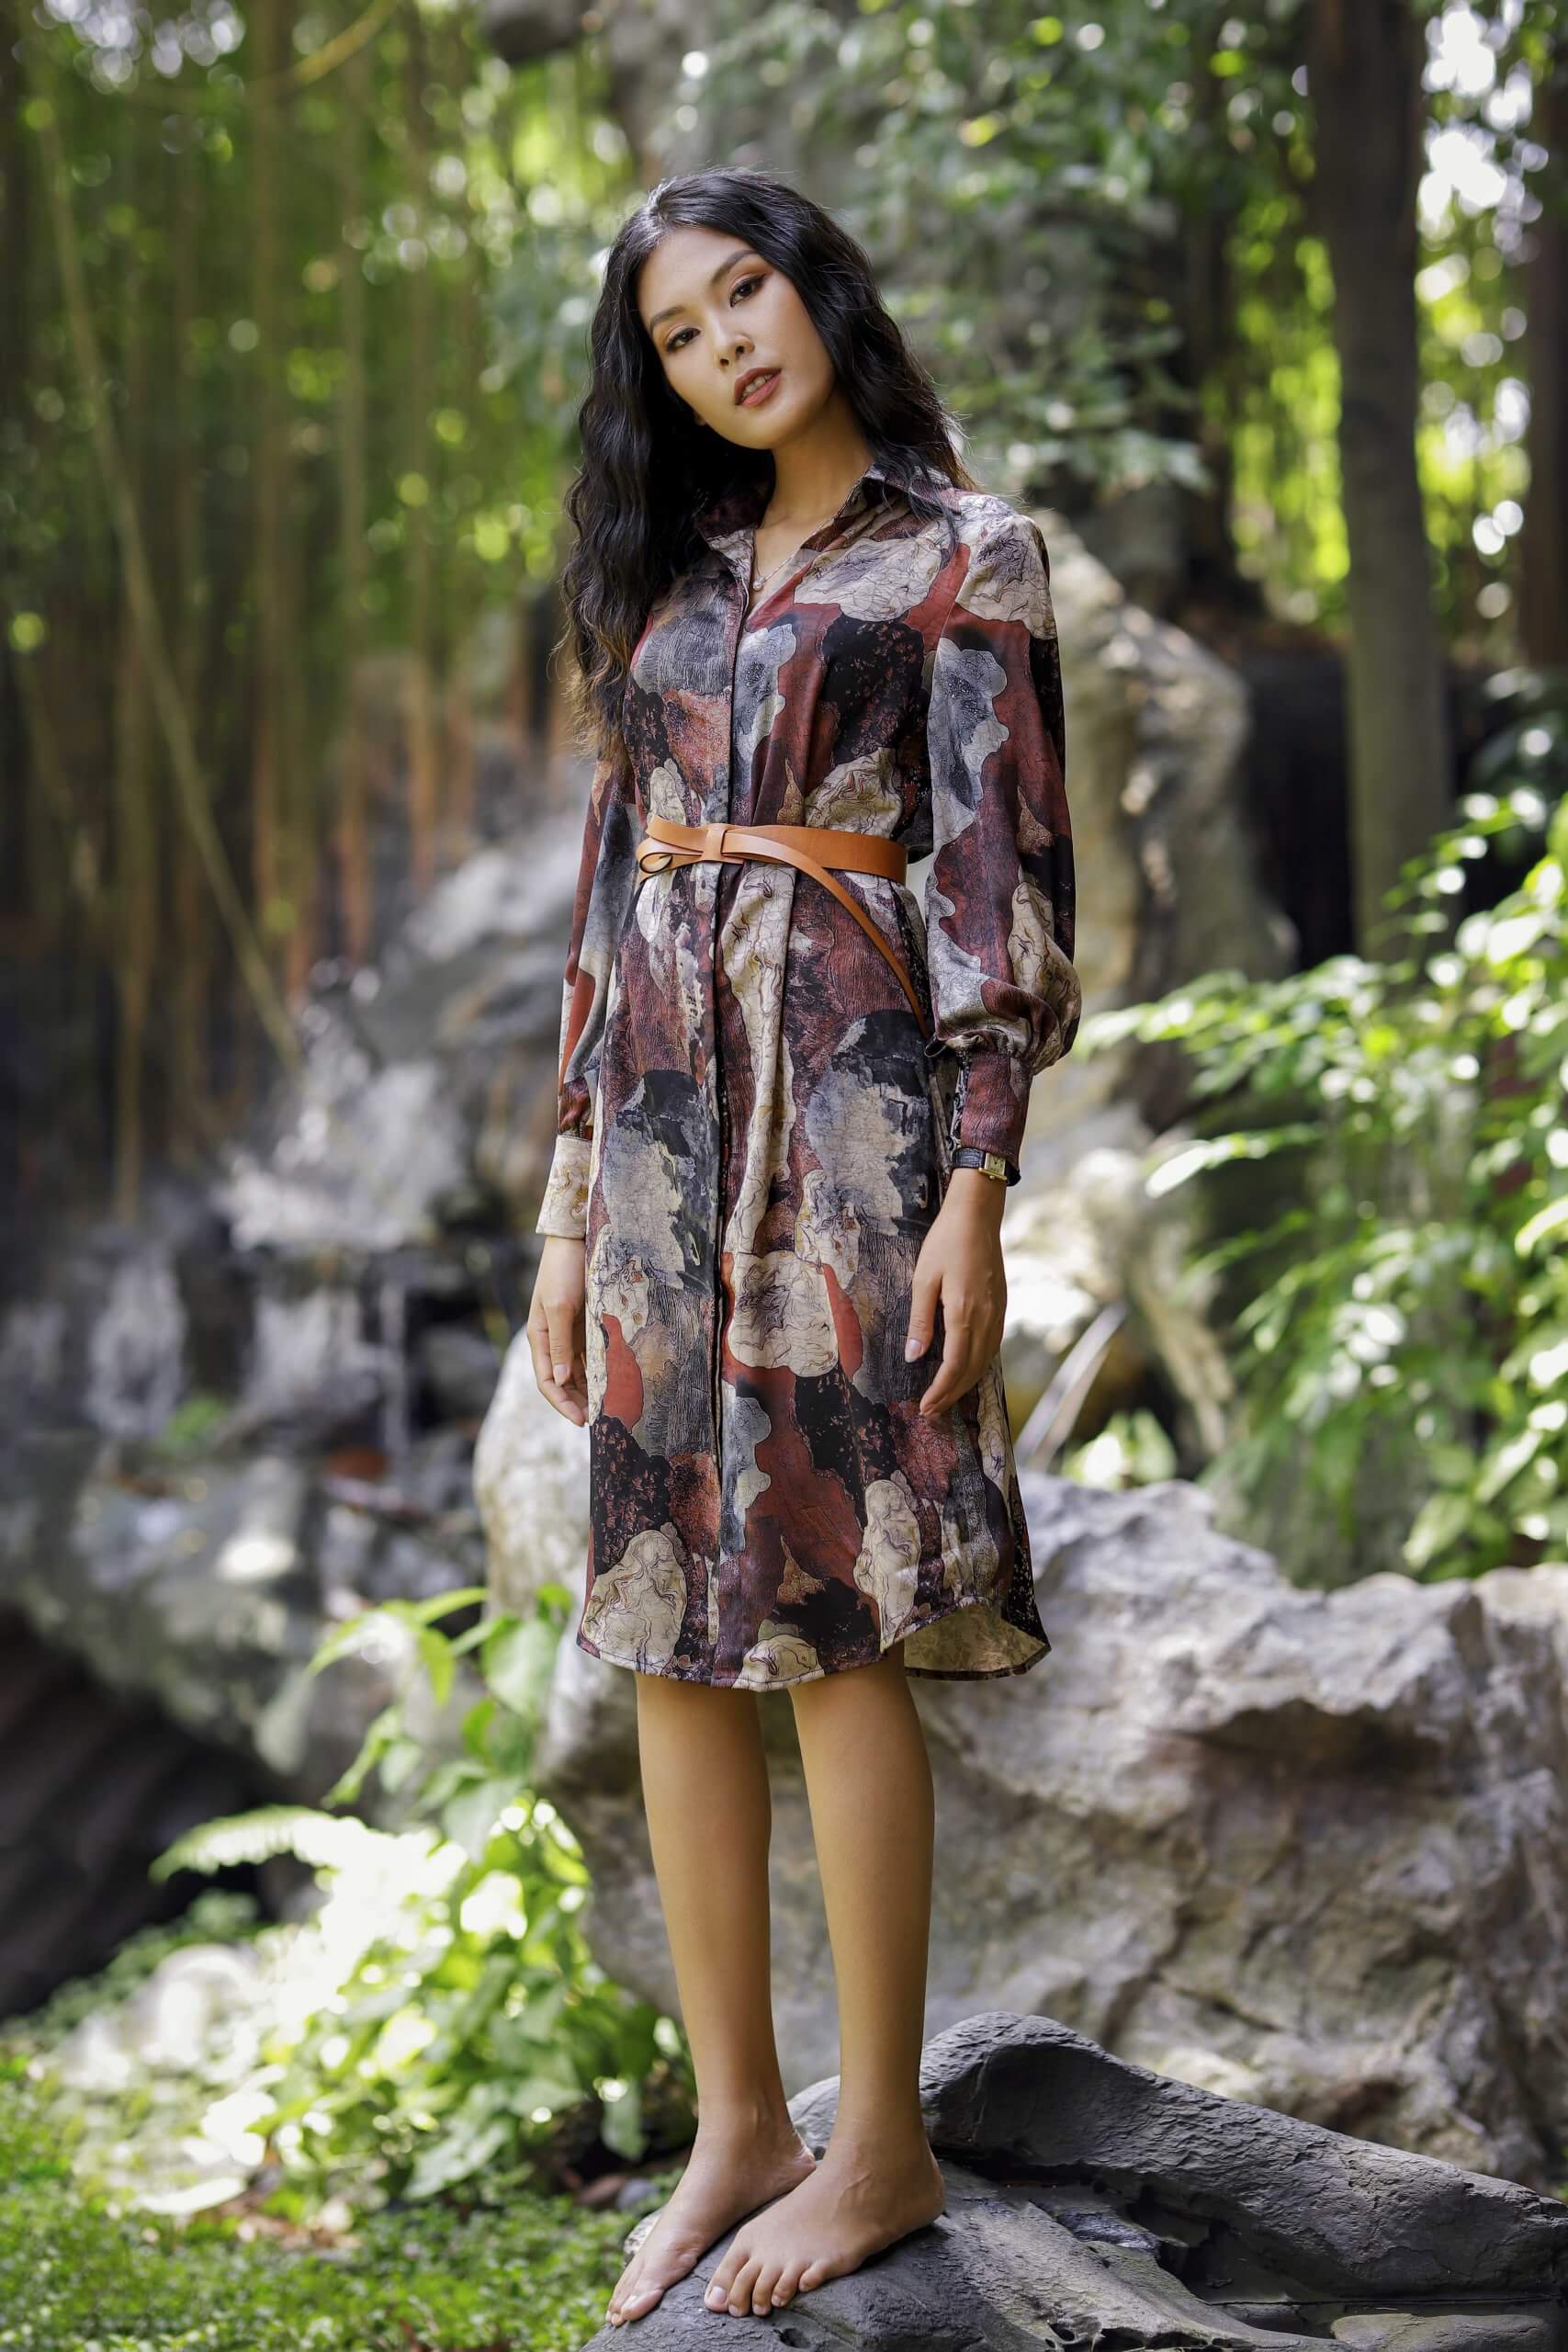 Thương hiệu thời trang thiết kế Amy Store  Tôn vinh vẻ đẹp phụ nữ Việt